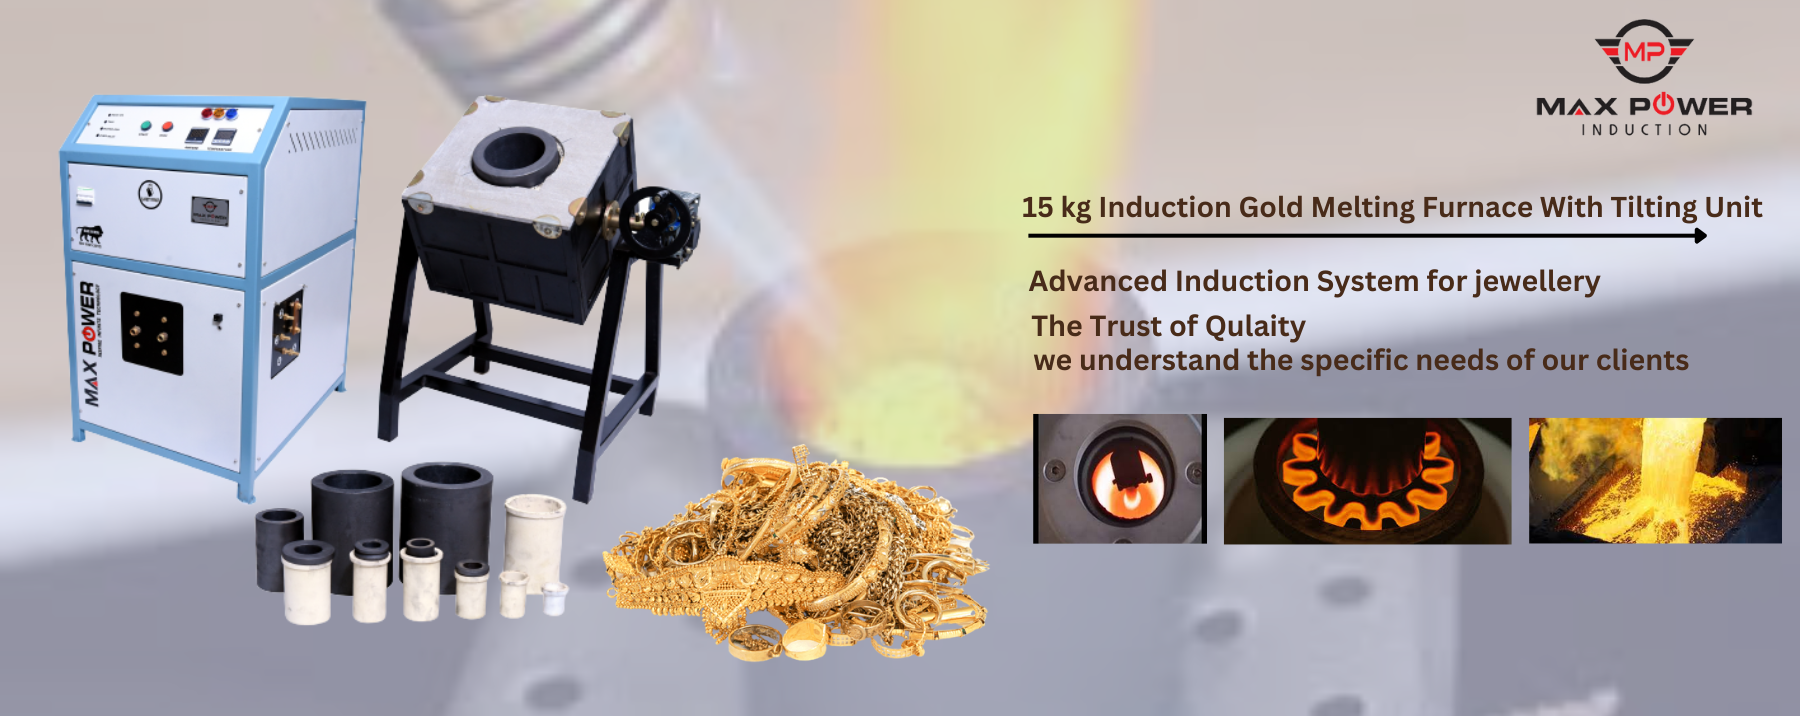 15 kg Induction Gold Melting Furnace With Tilting Unit